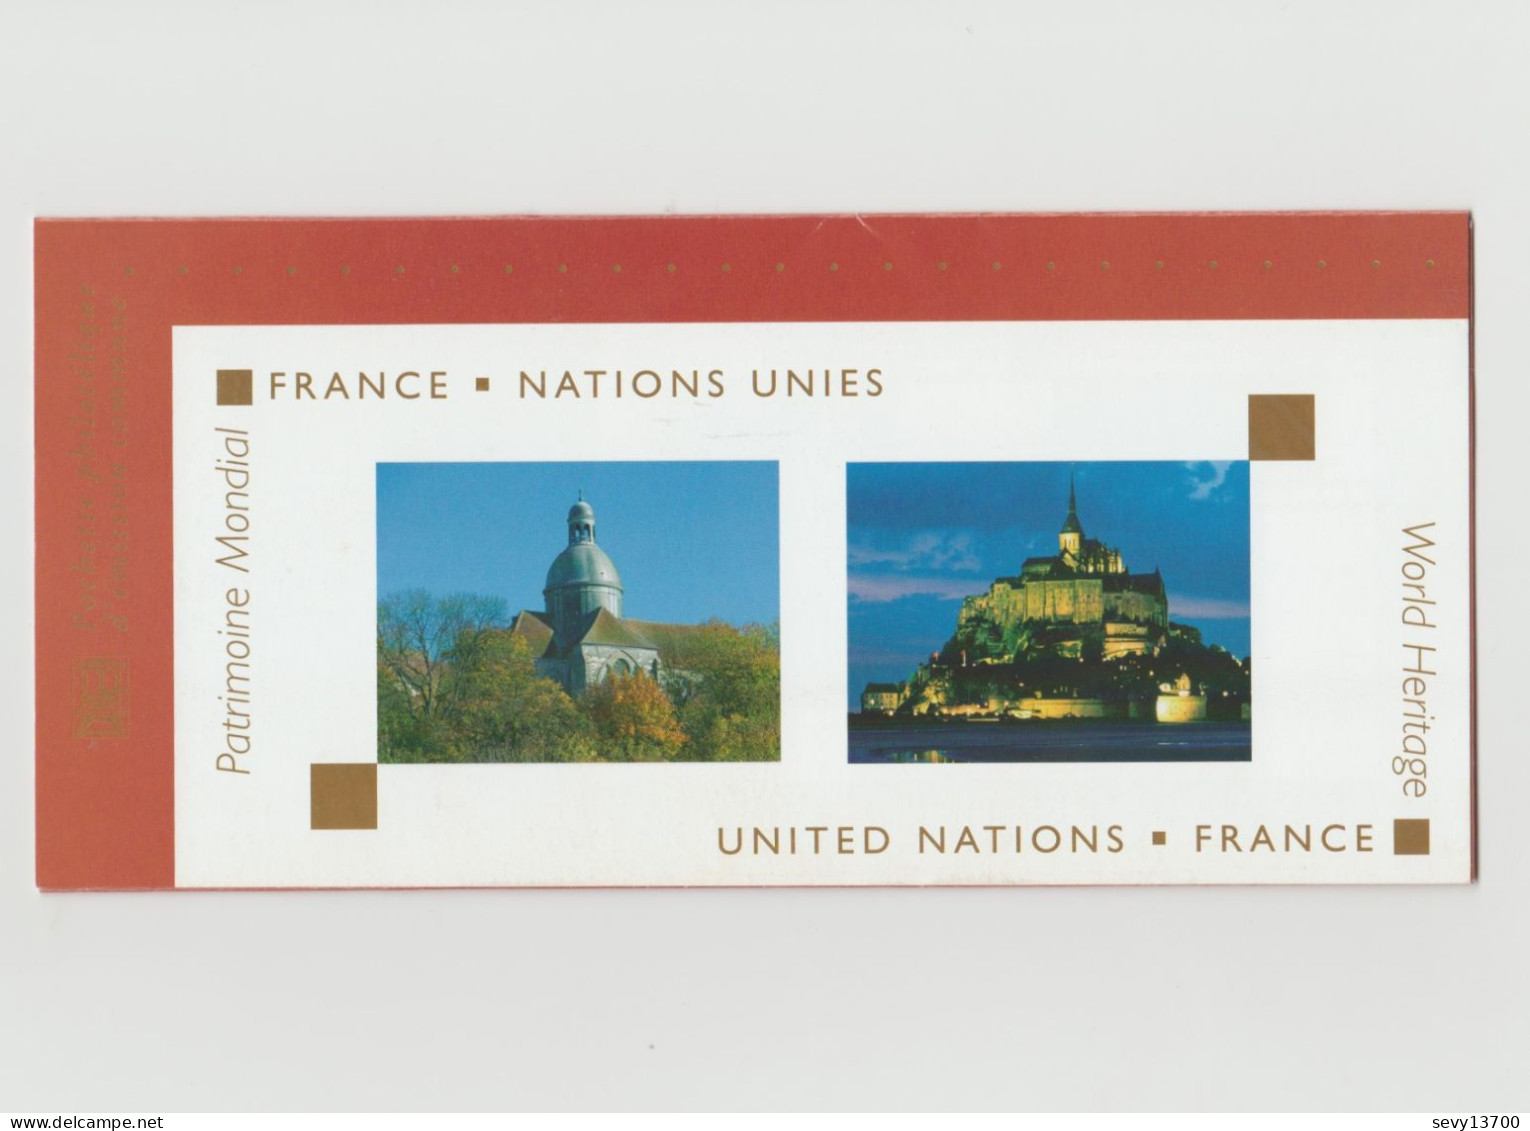 France 2006 Emission Commune France Nations Unis - Blocs Souvenir